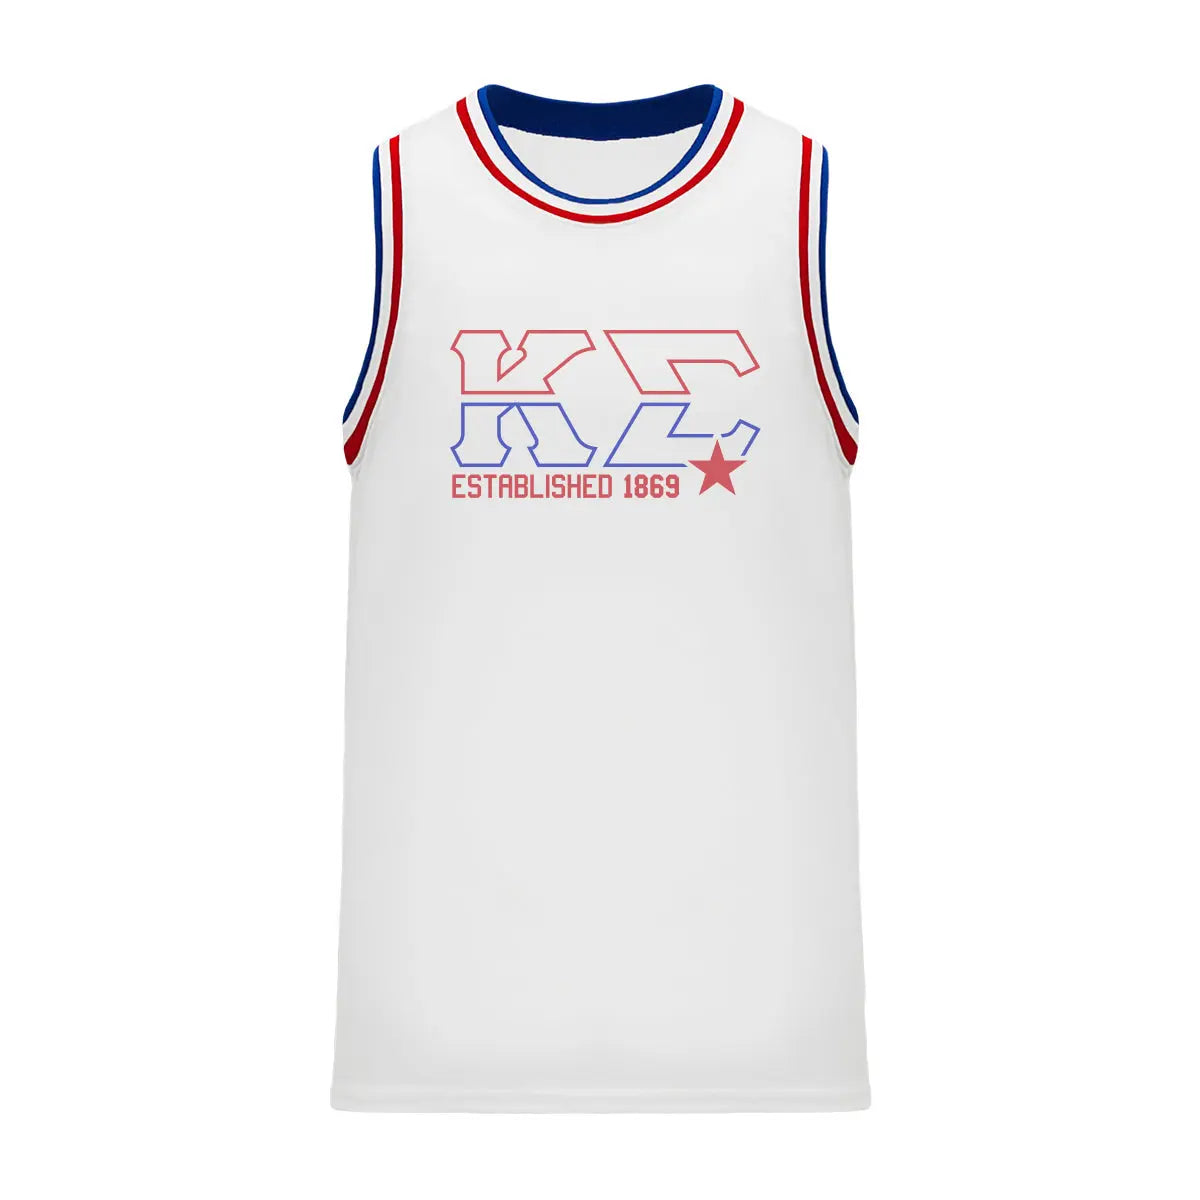 Kappa Sig Retro Block Basketball Jersey - Kappa Sigma Official Store